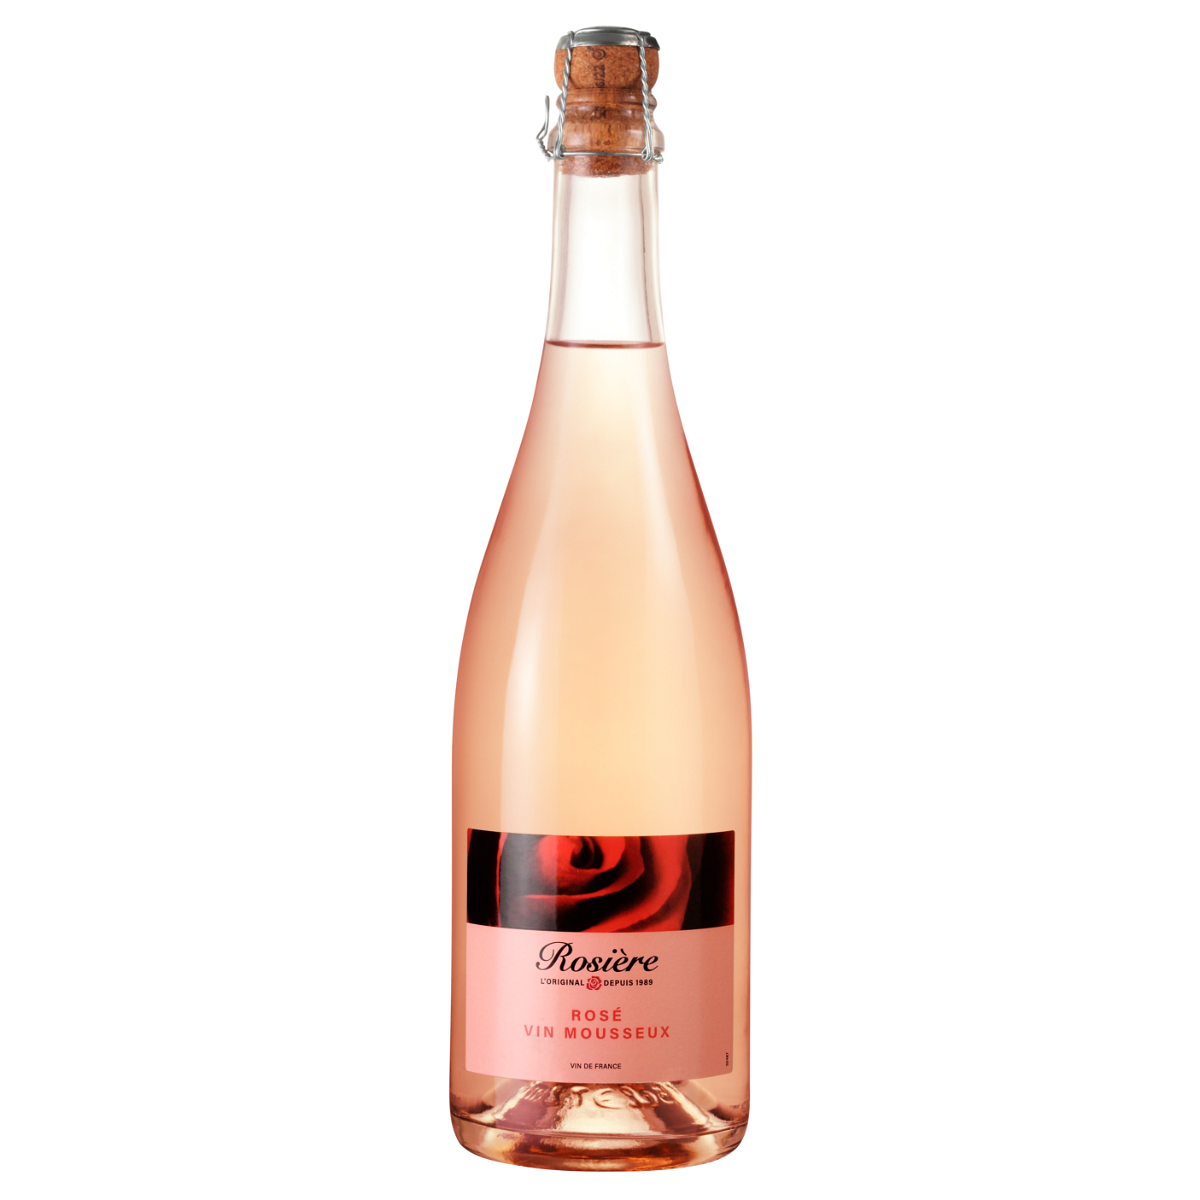 Rosière Rosé Vin mousseux Vin de France 